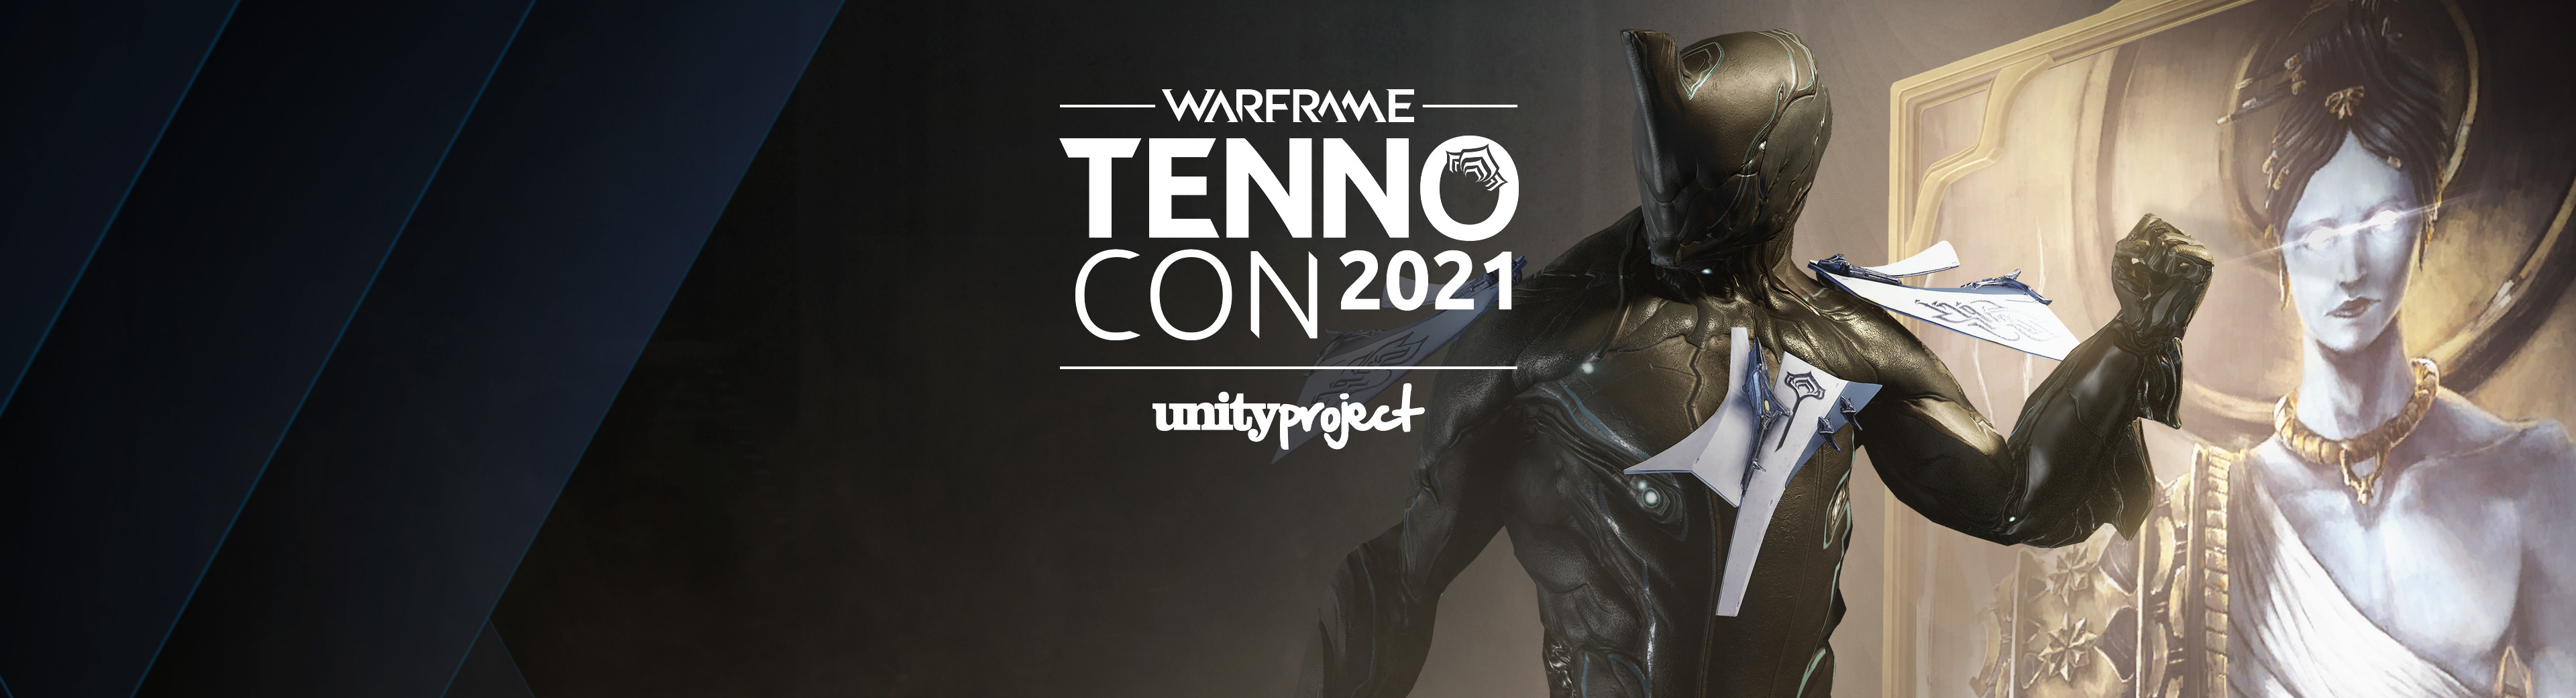 TennoCon 2021 Charity Donation